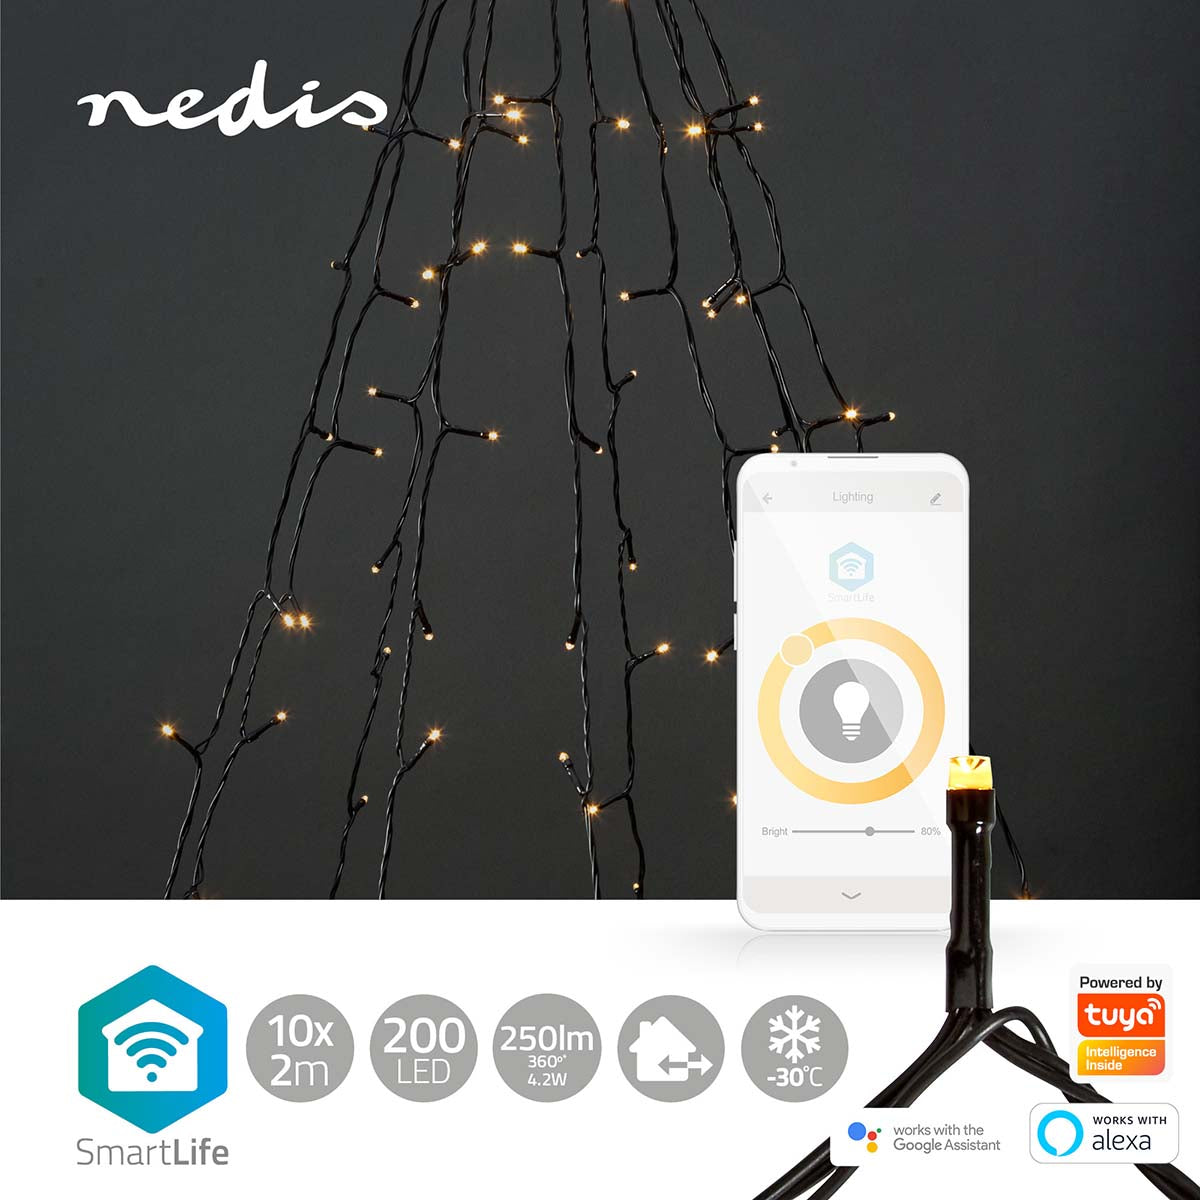 Luzes Nedis Wi-FI branco quente iluminação inteligente para um Natal acolhedor. Controle via Wi-Fi para uma experiência festiva personalizável.